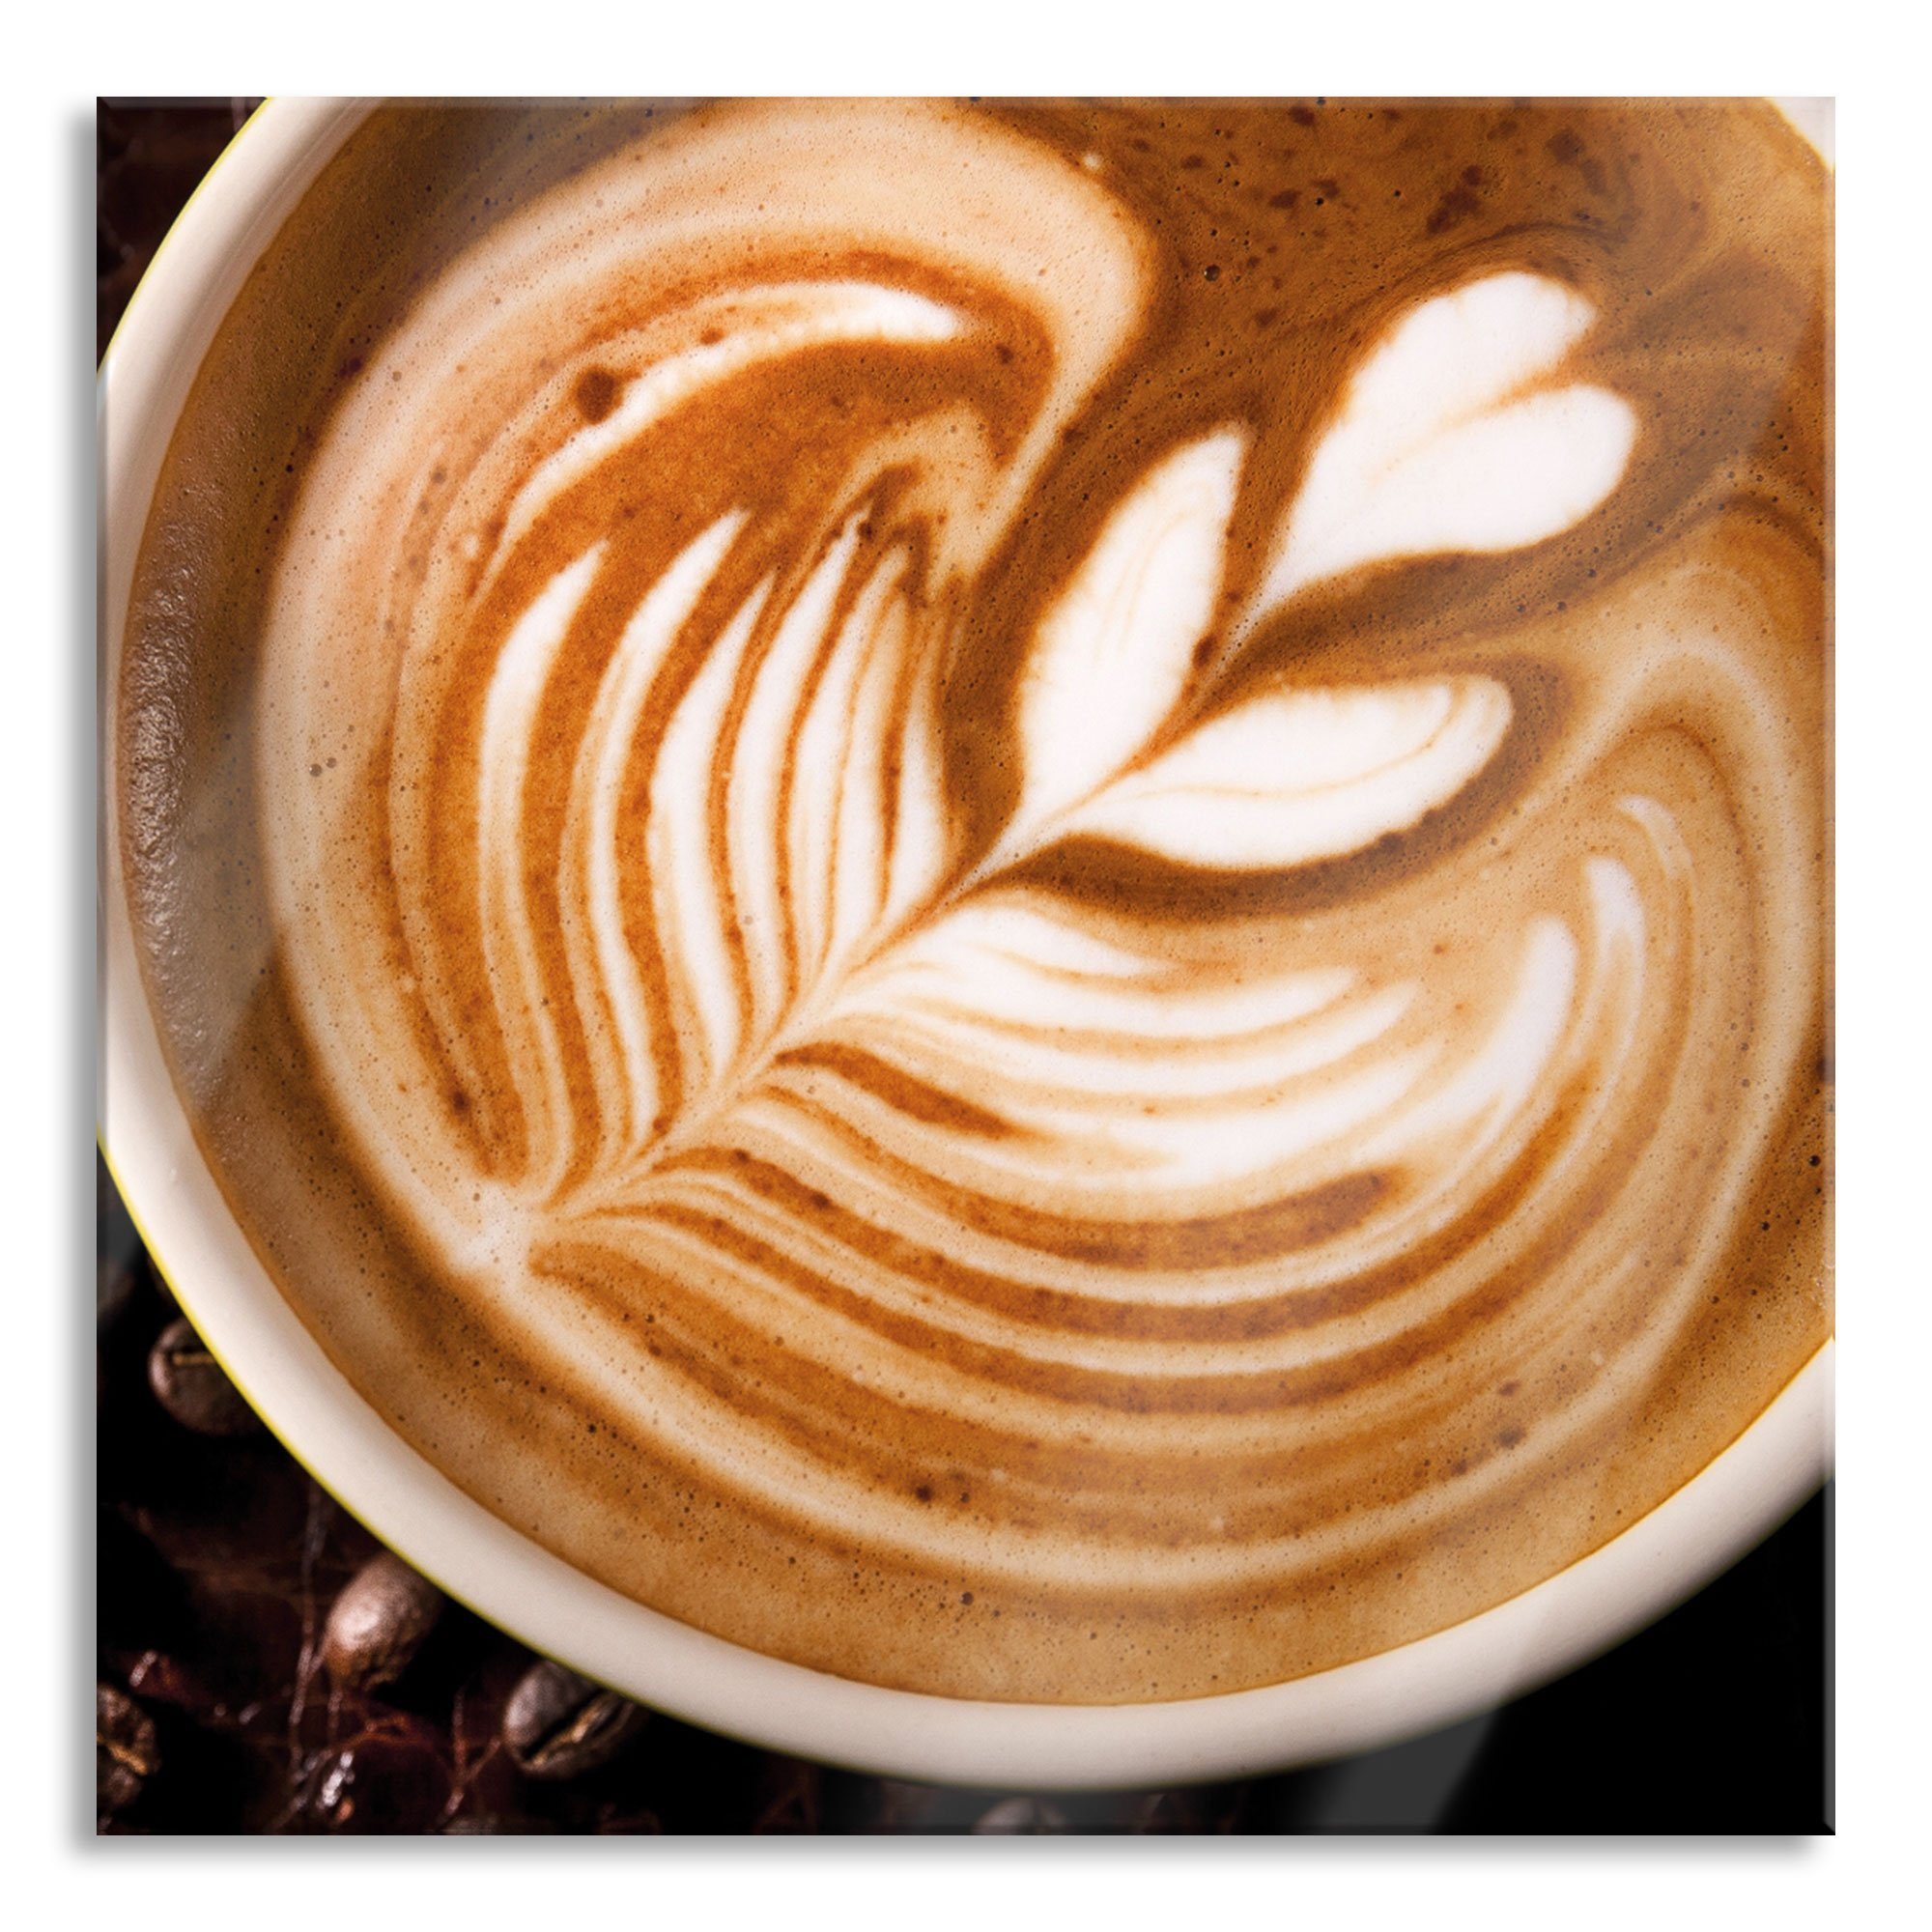 Pixxprint Glasbild Tasse Kaffee mit Schaumherz, Tasse Kaffee mit Schaumherz (1 St), Glasbild aus Echtglas, inkl. Aufhängungen und Abstandshalter